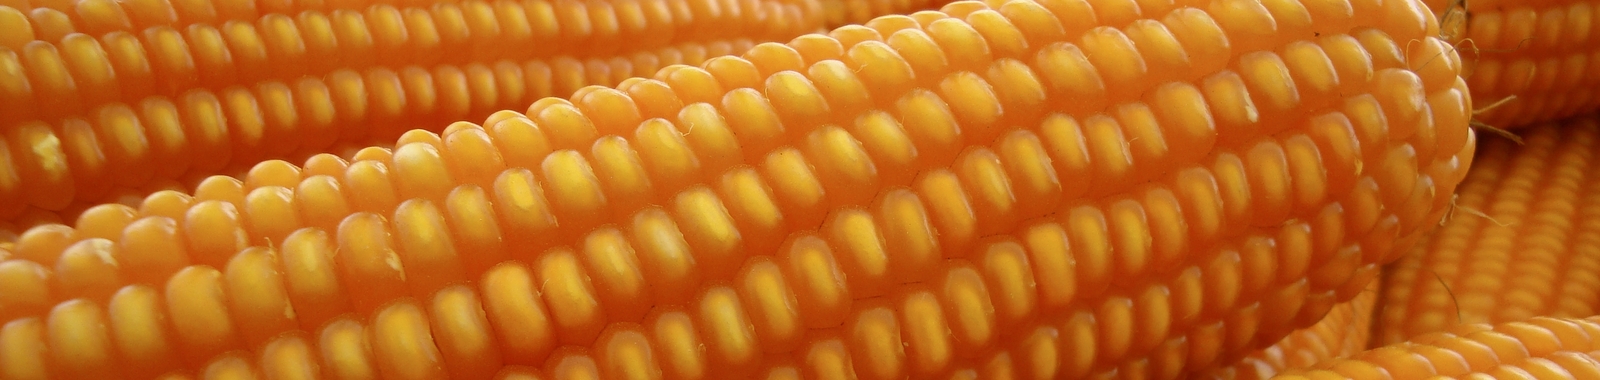 Cómo aumentar el rendimiento del maíz